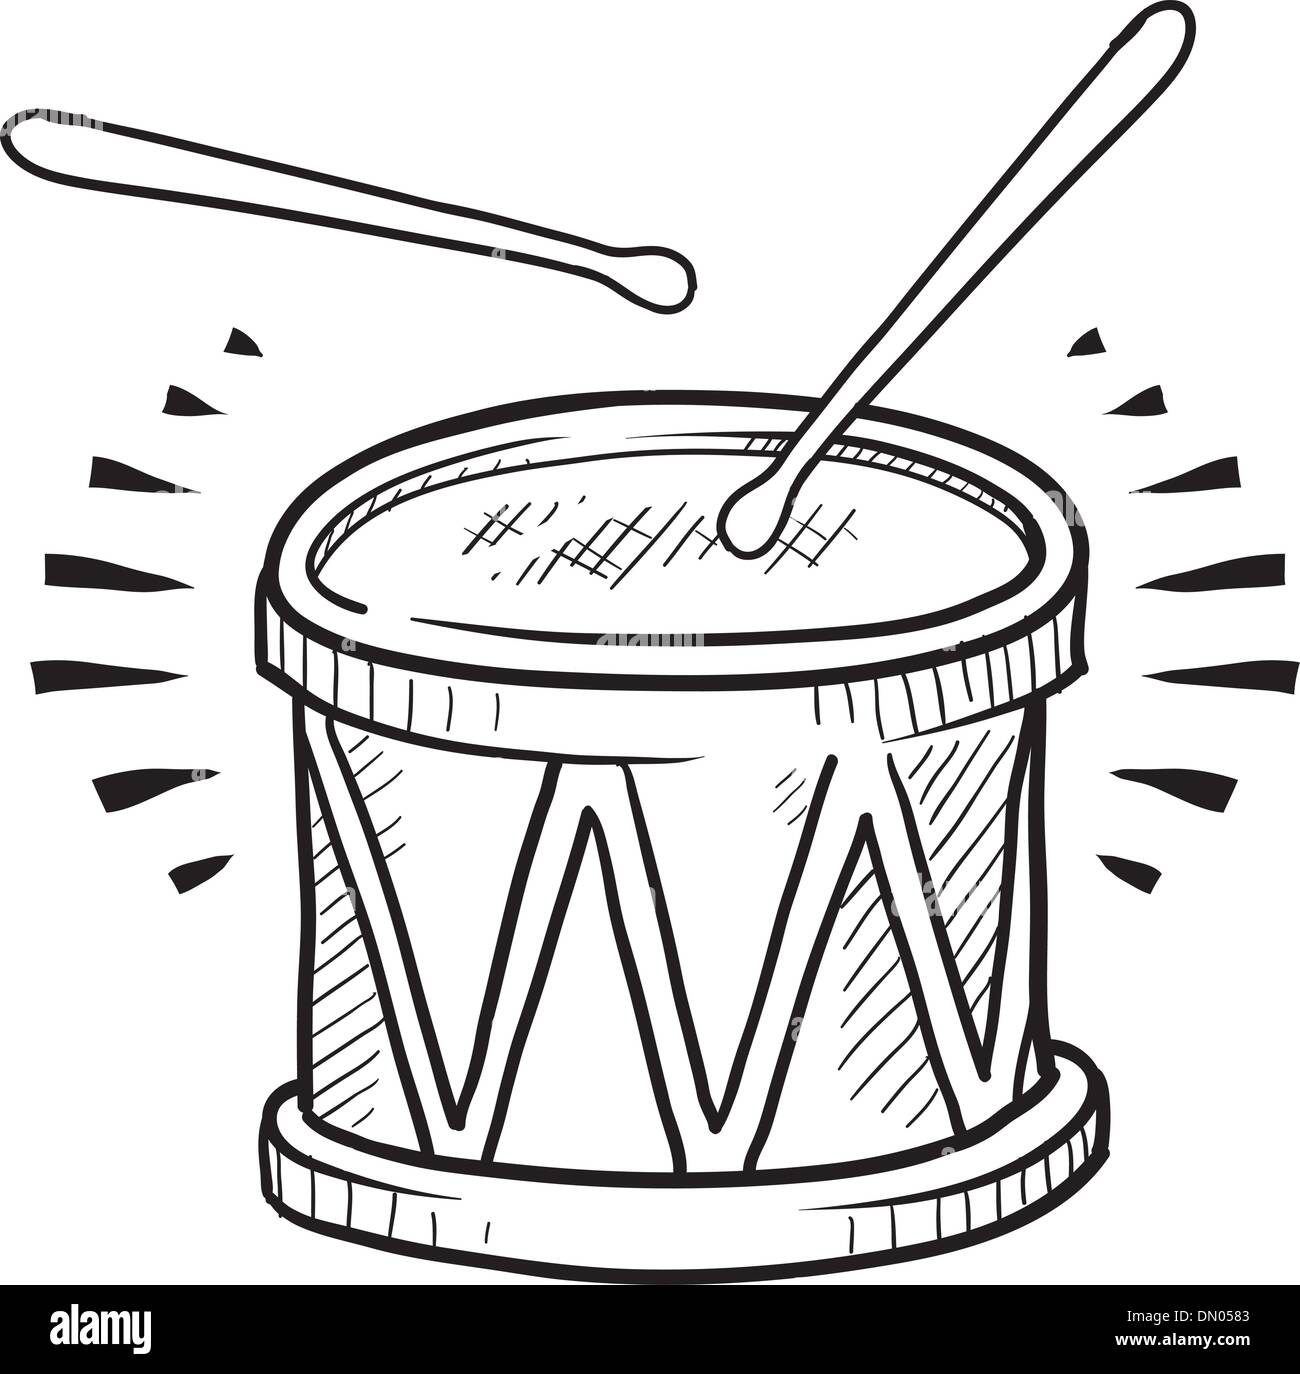 Snare drum vector sketch Stock Vector Image & Art - Alamy